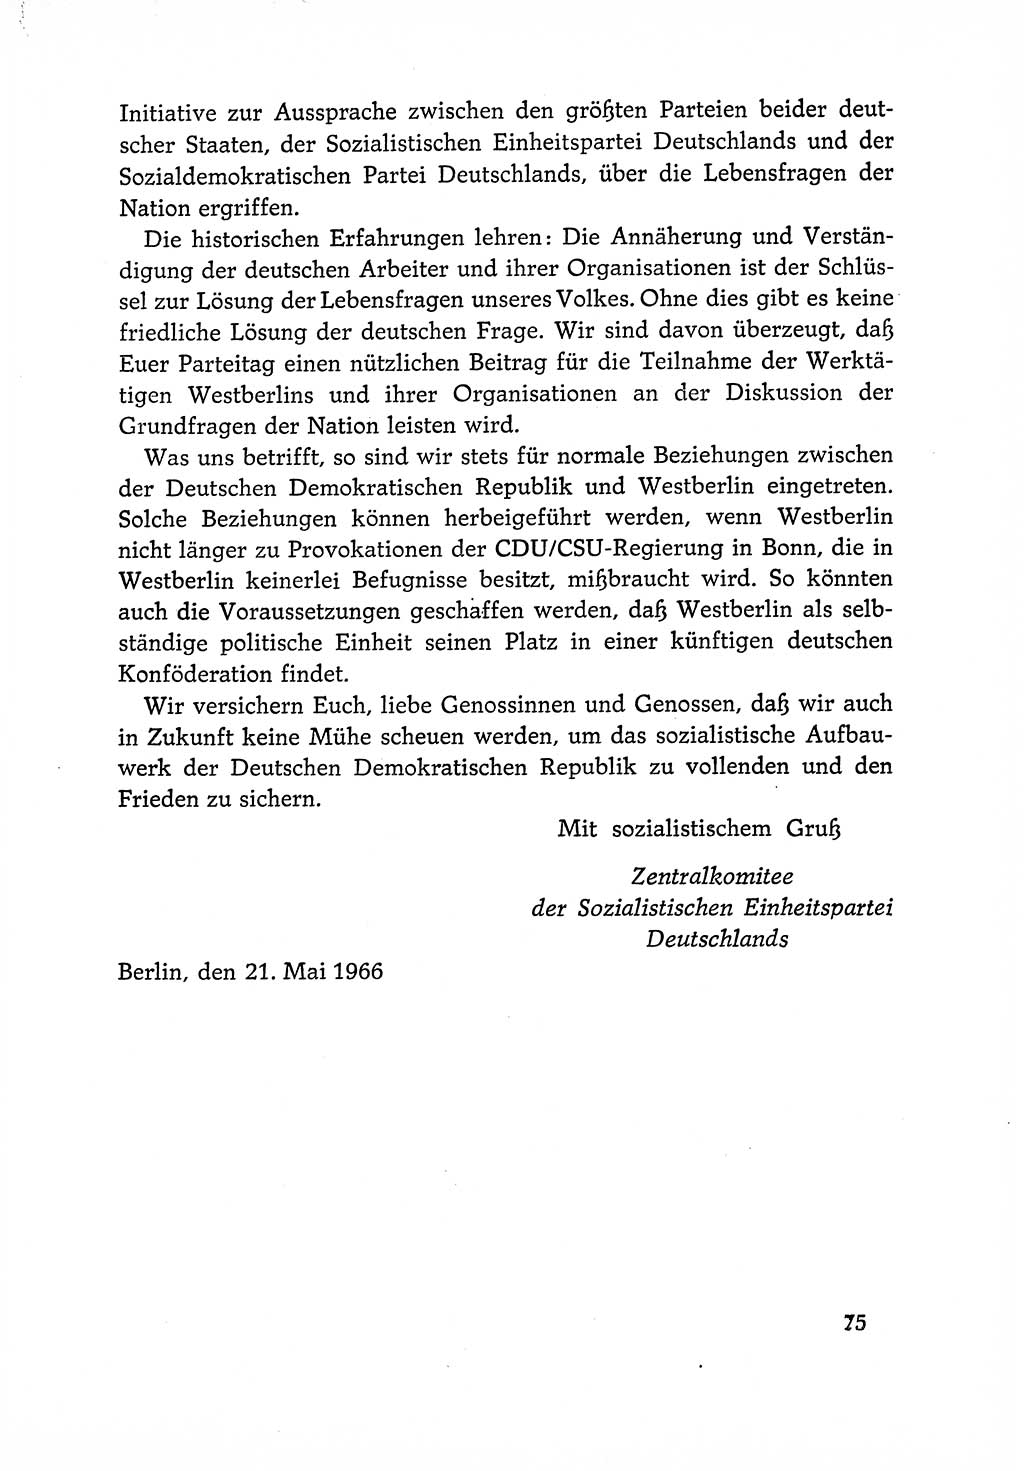 Dokumente der Sozialistischen Einheitspartei Deutschlands (SED) [Deutsche Demokratische Republik (DDR)] 1966-1967, Seite 75 (Dok. SED DDR 1966-1967, S. 75)